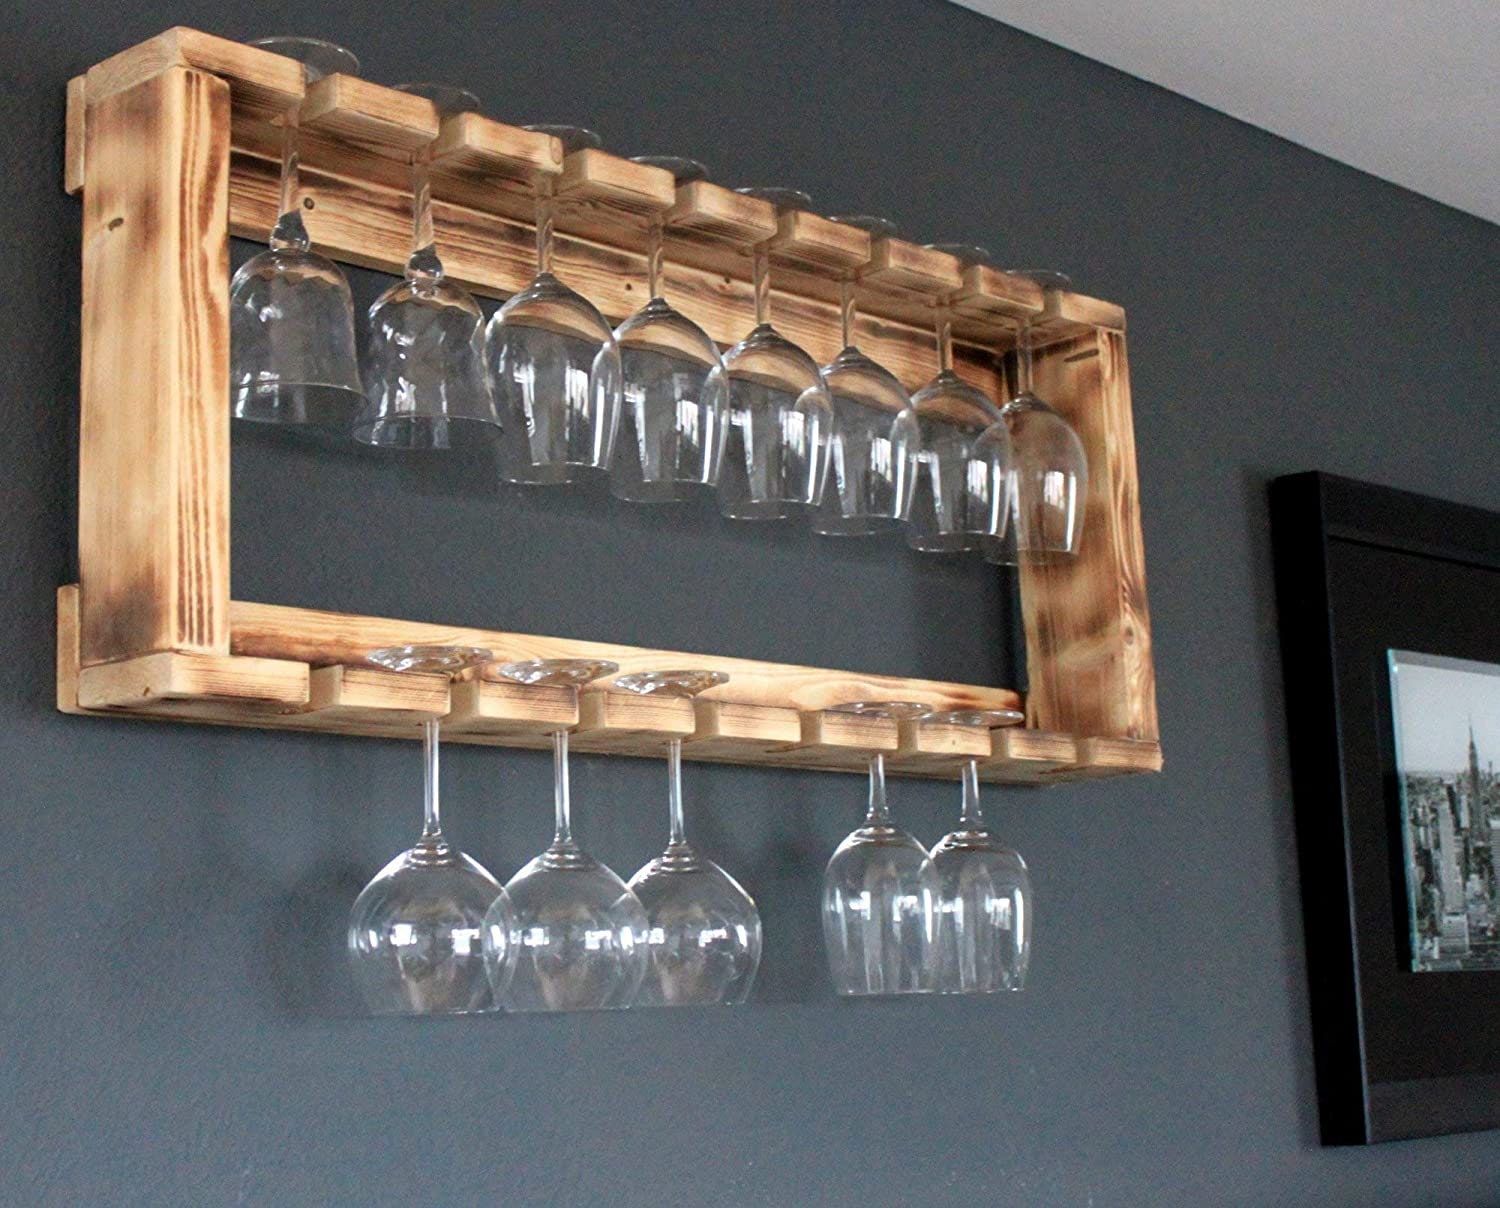 Botellero de madera para pared con soporte para copas marrón completamente  montado estante para botellas de vino y copas de vino -  México